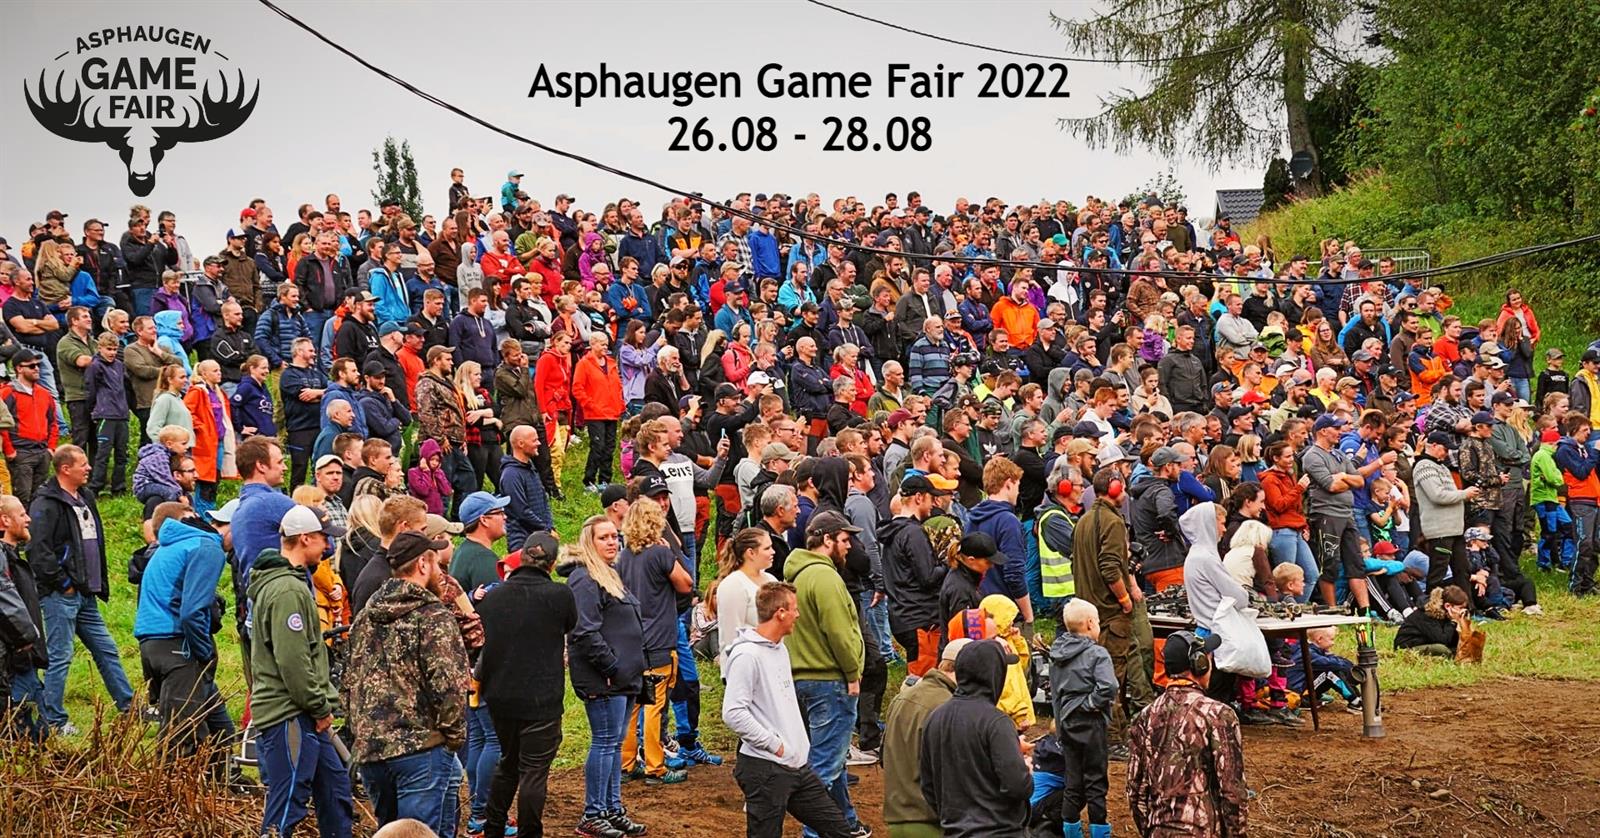 Asphaugen Game Fair 2022